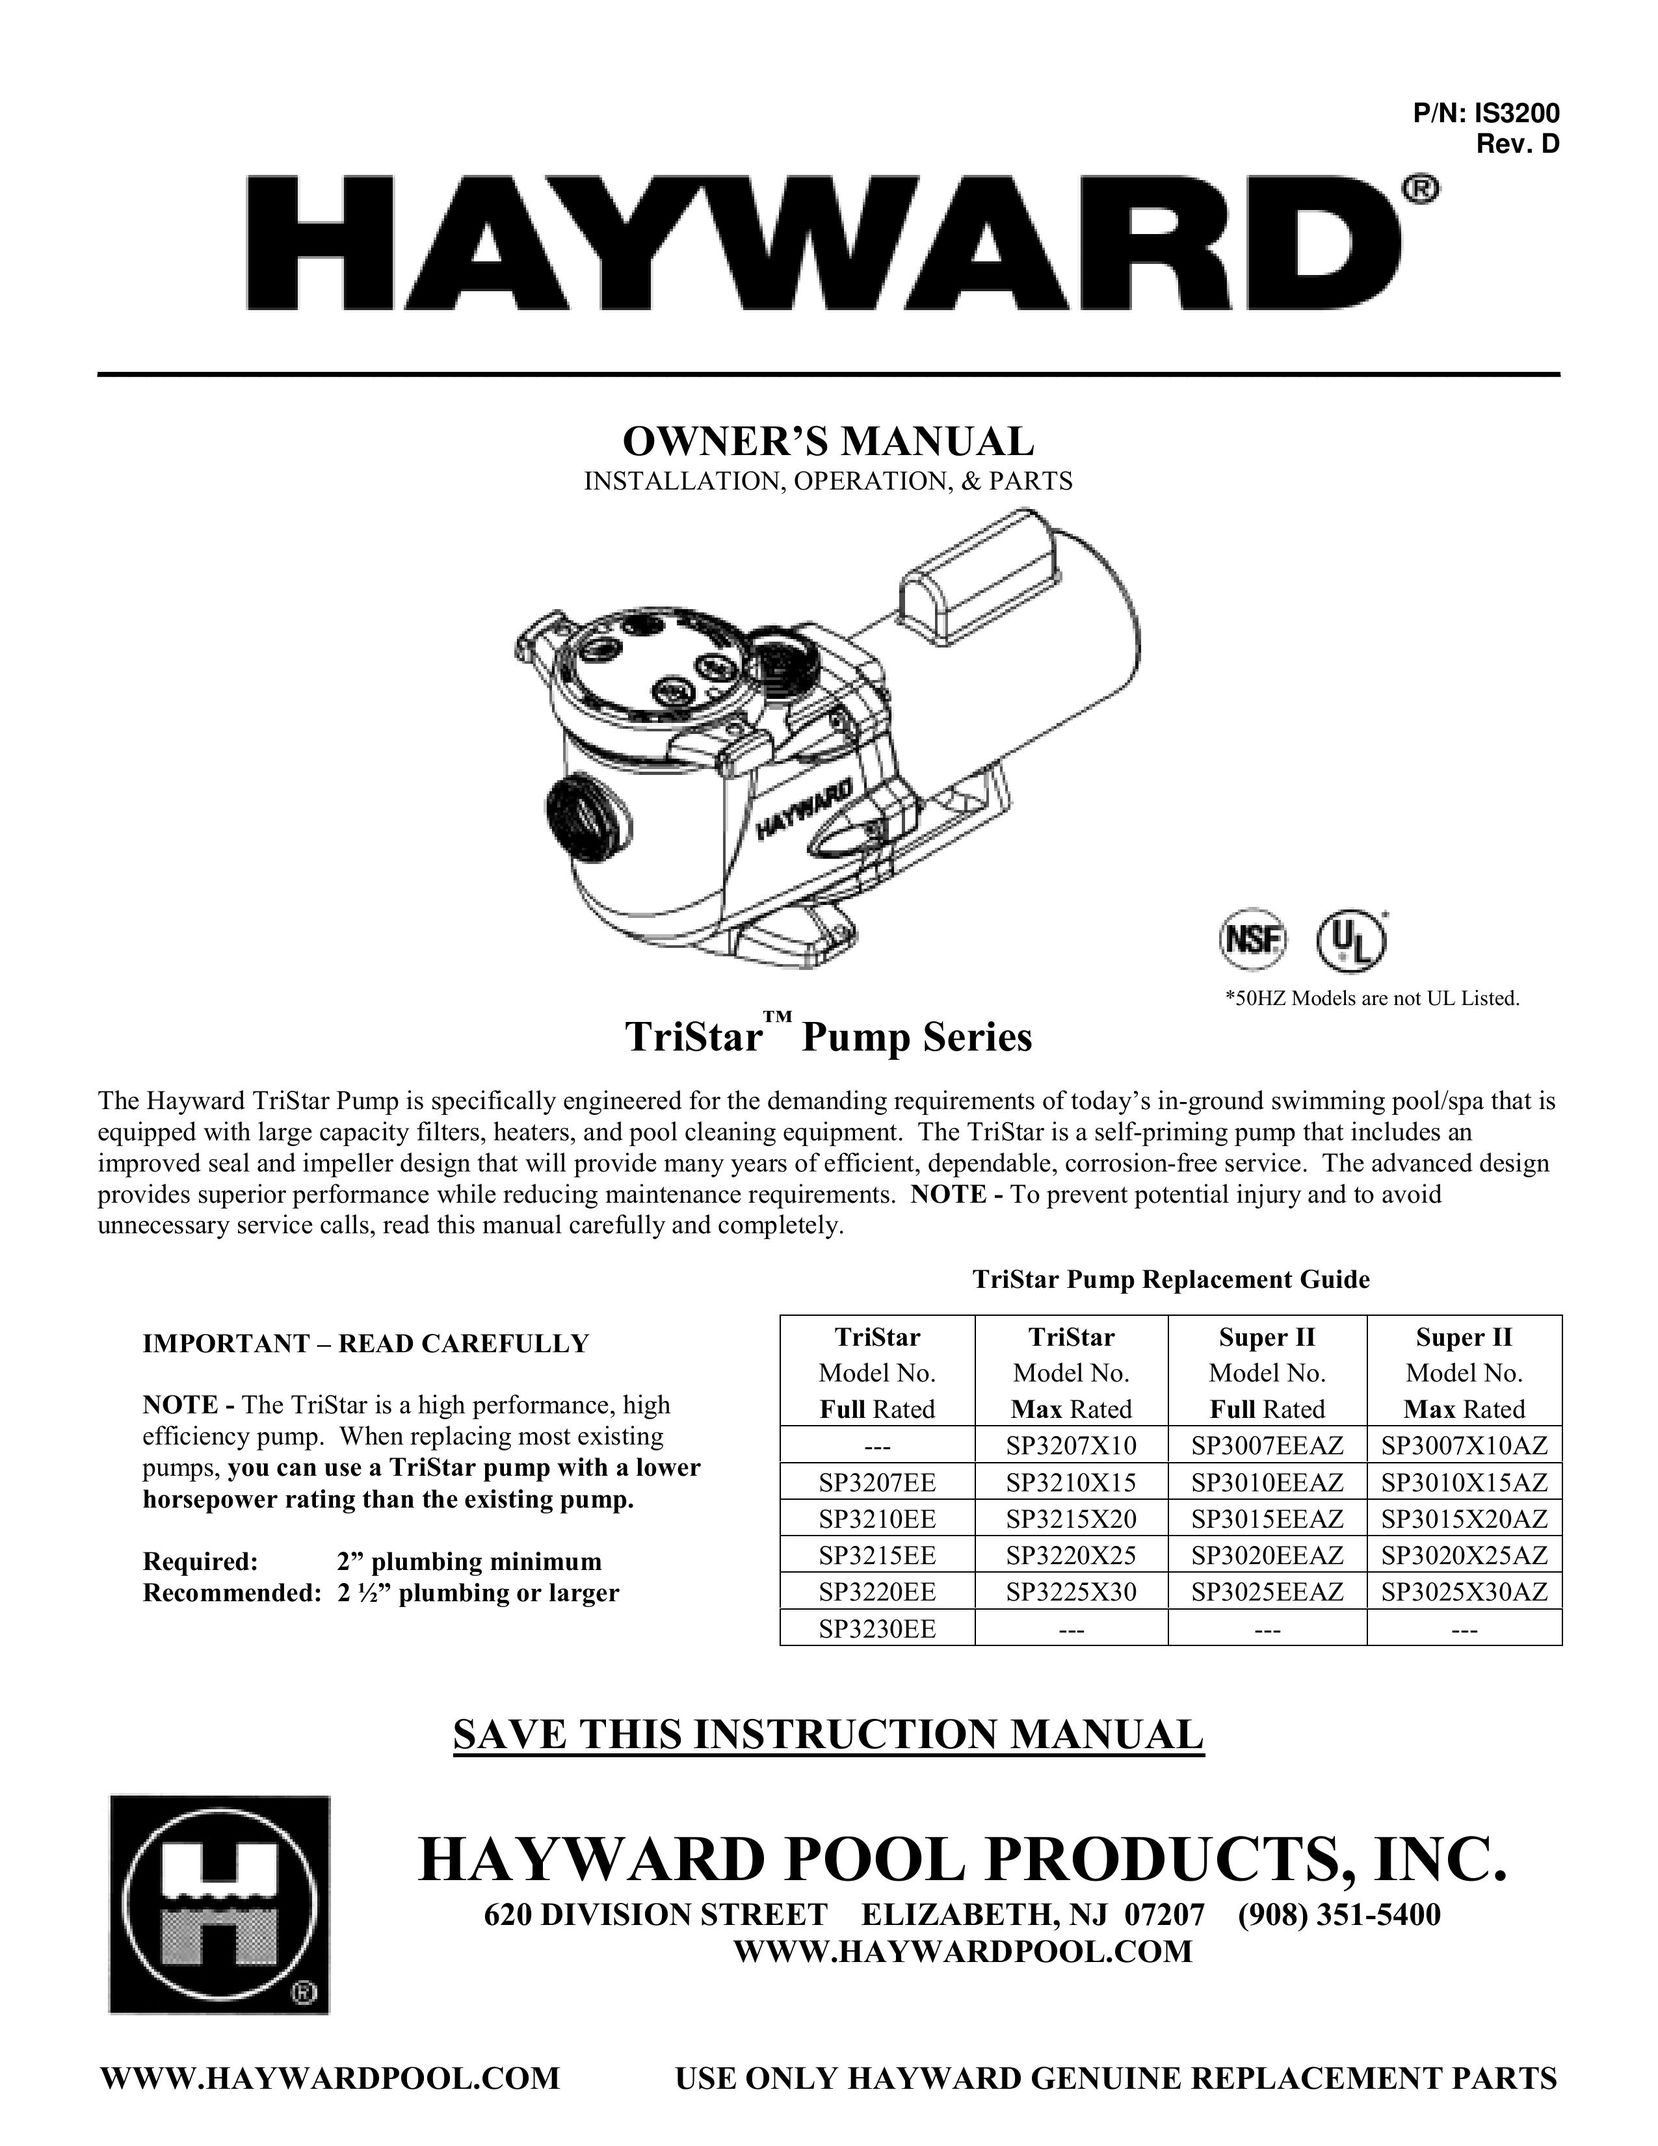 TriStar SP3215X20 Heat Pump User Manual